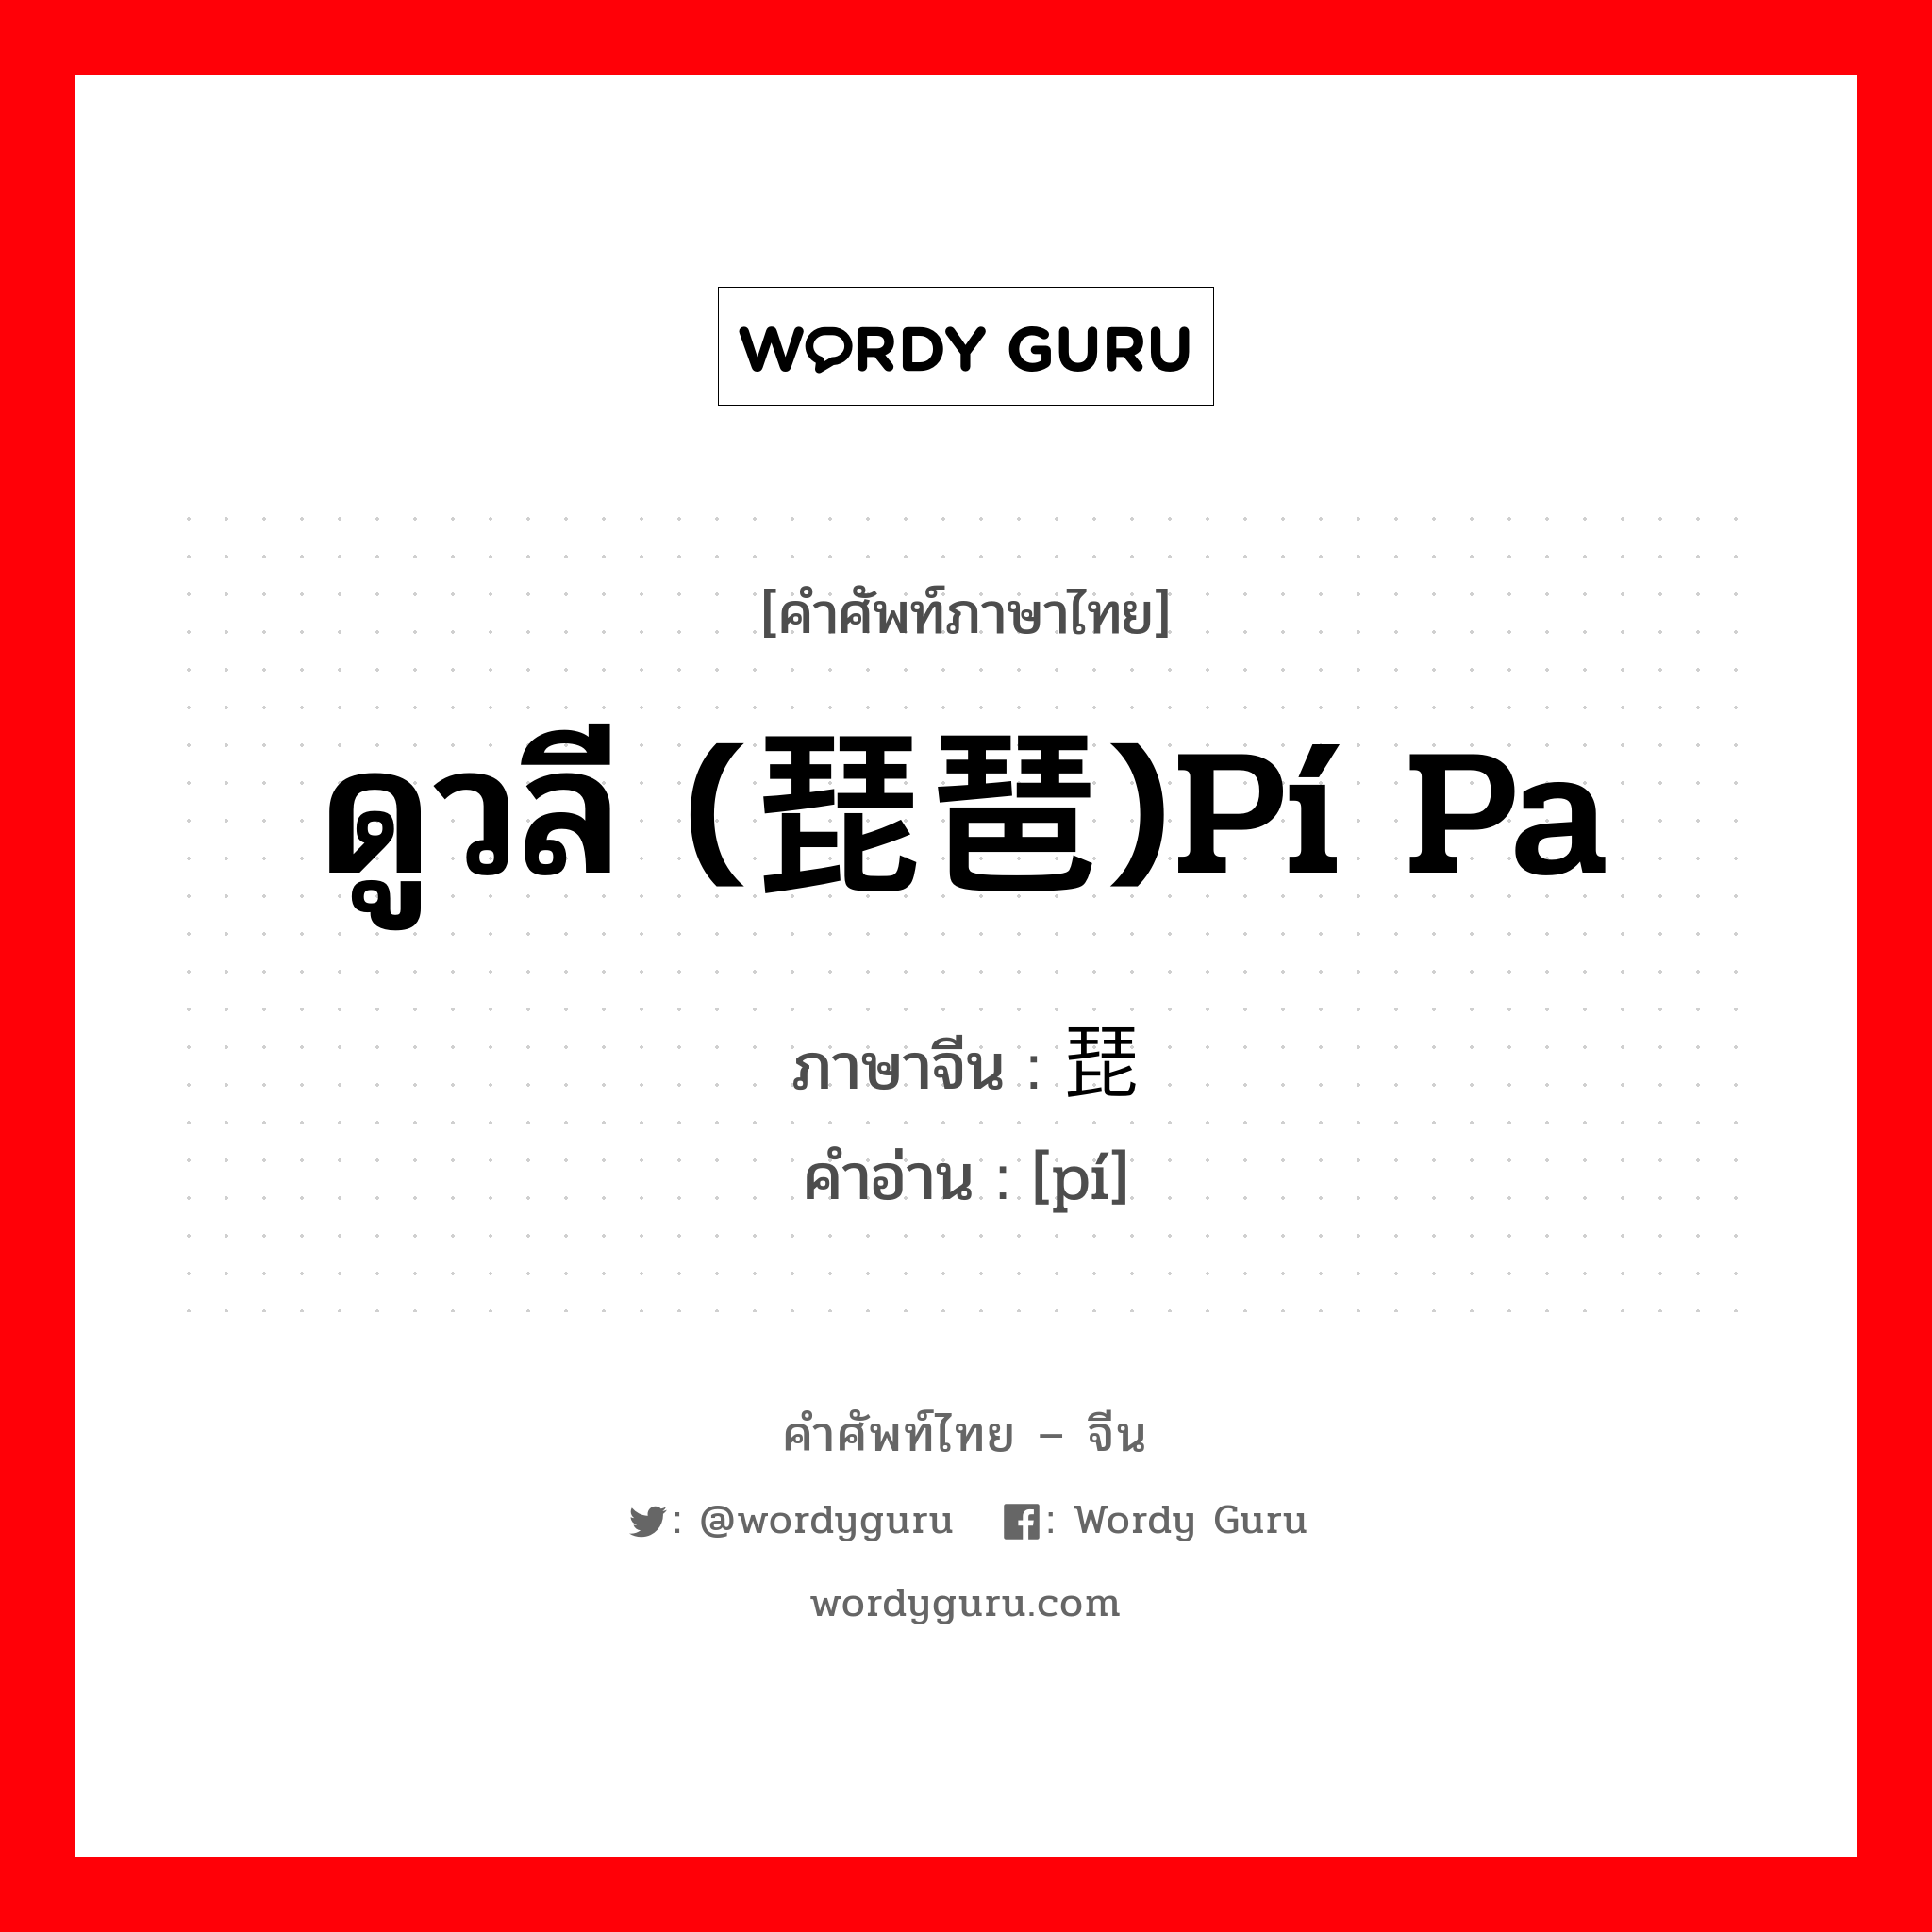 ดูวลี (琵琶)pí pa ภาษาจีนคืออะไร, คำศัพท์ภาษาไทย - จีน ดูวลี (琵琶)pí pa ภาษาจีน 琵 คำอ่าน [pí]